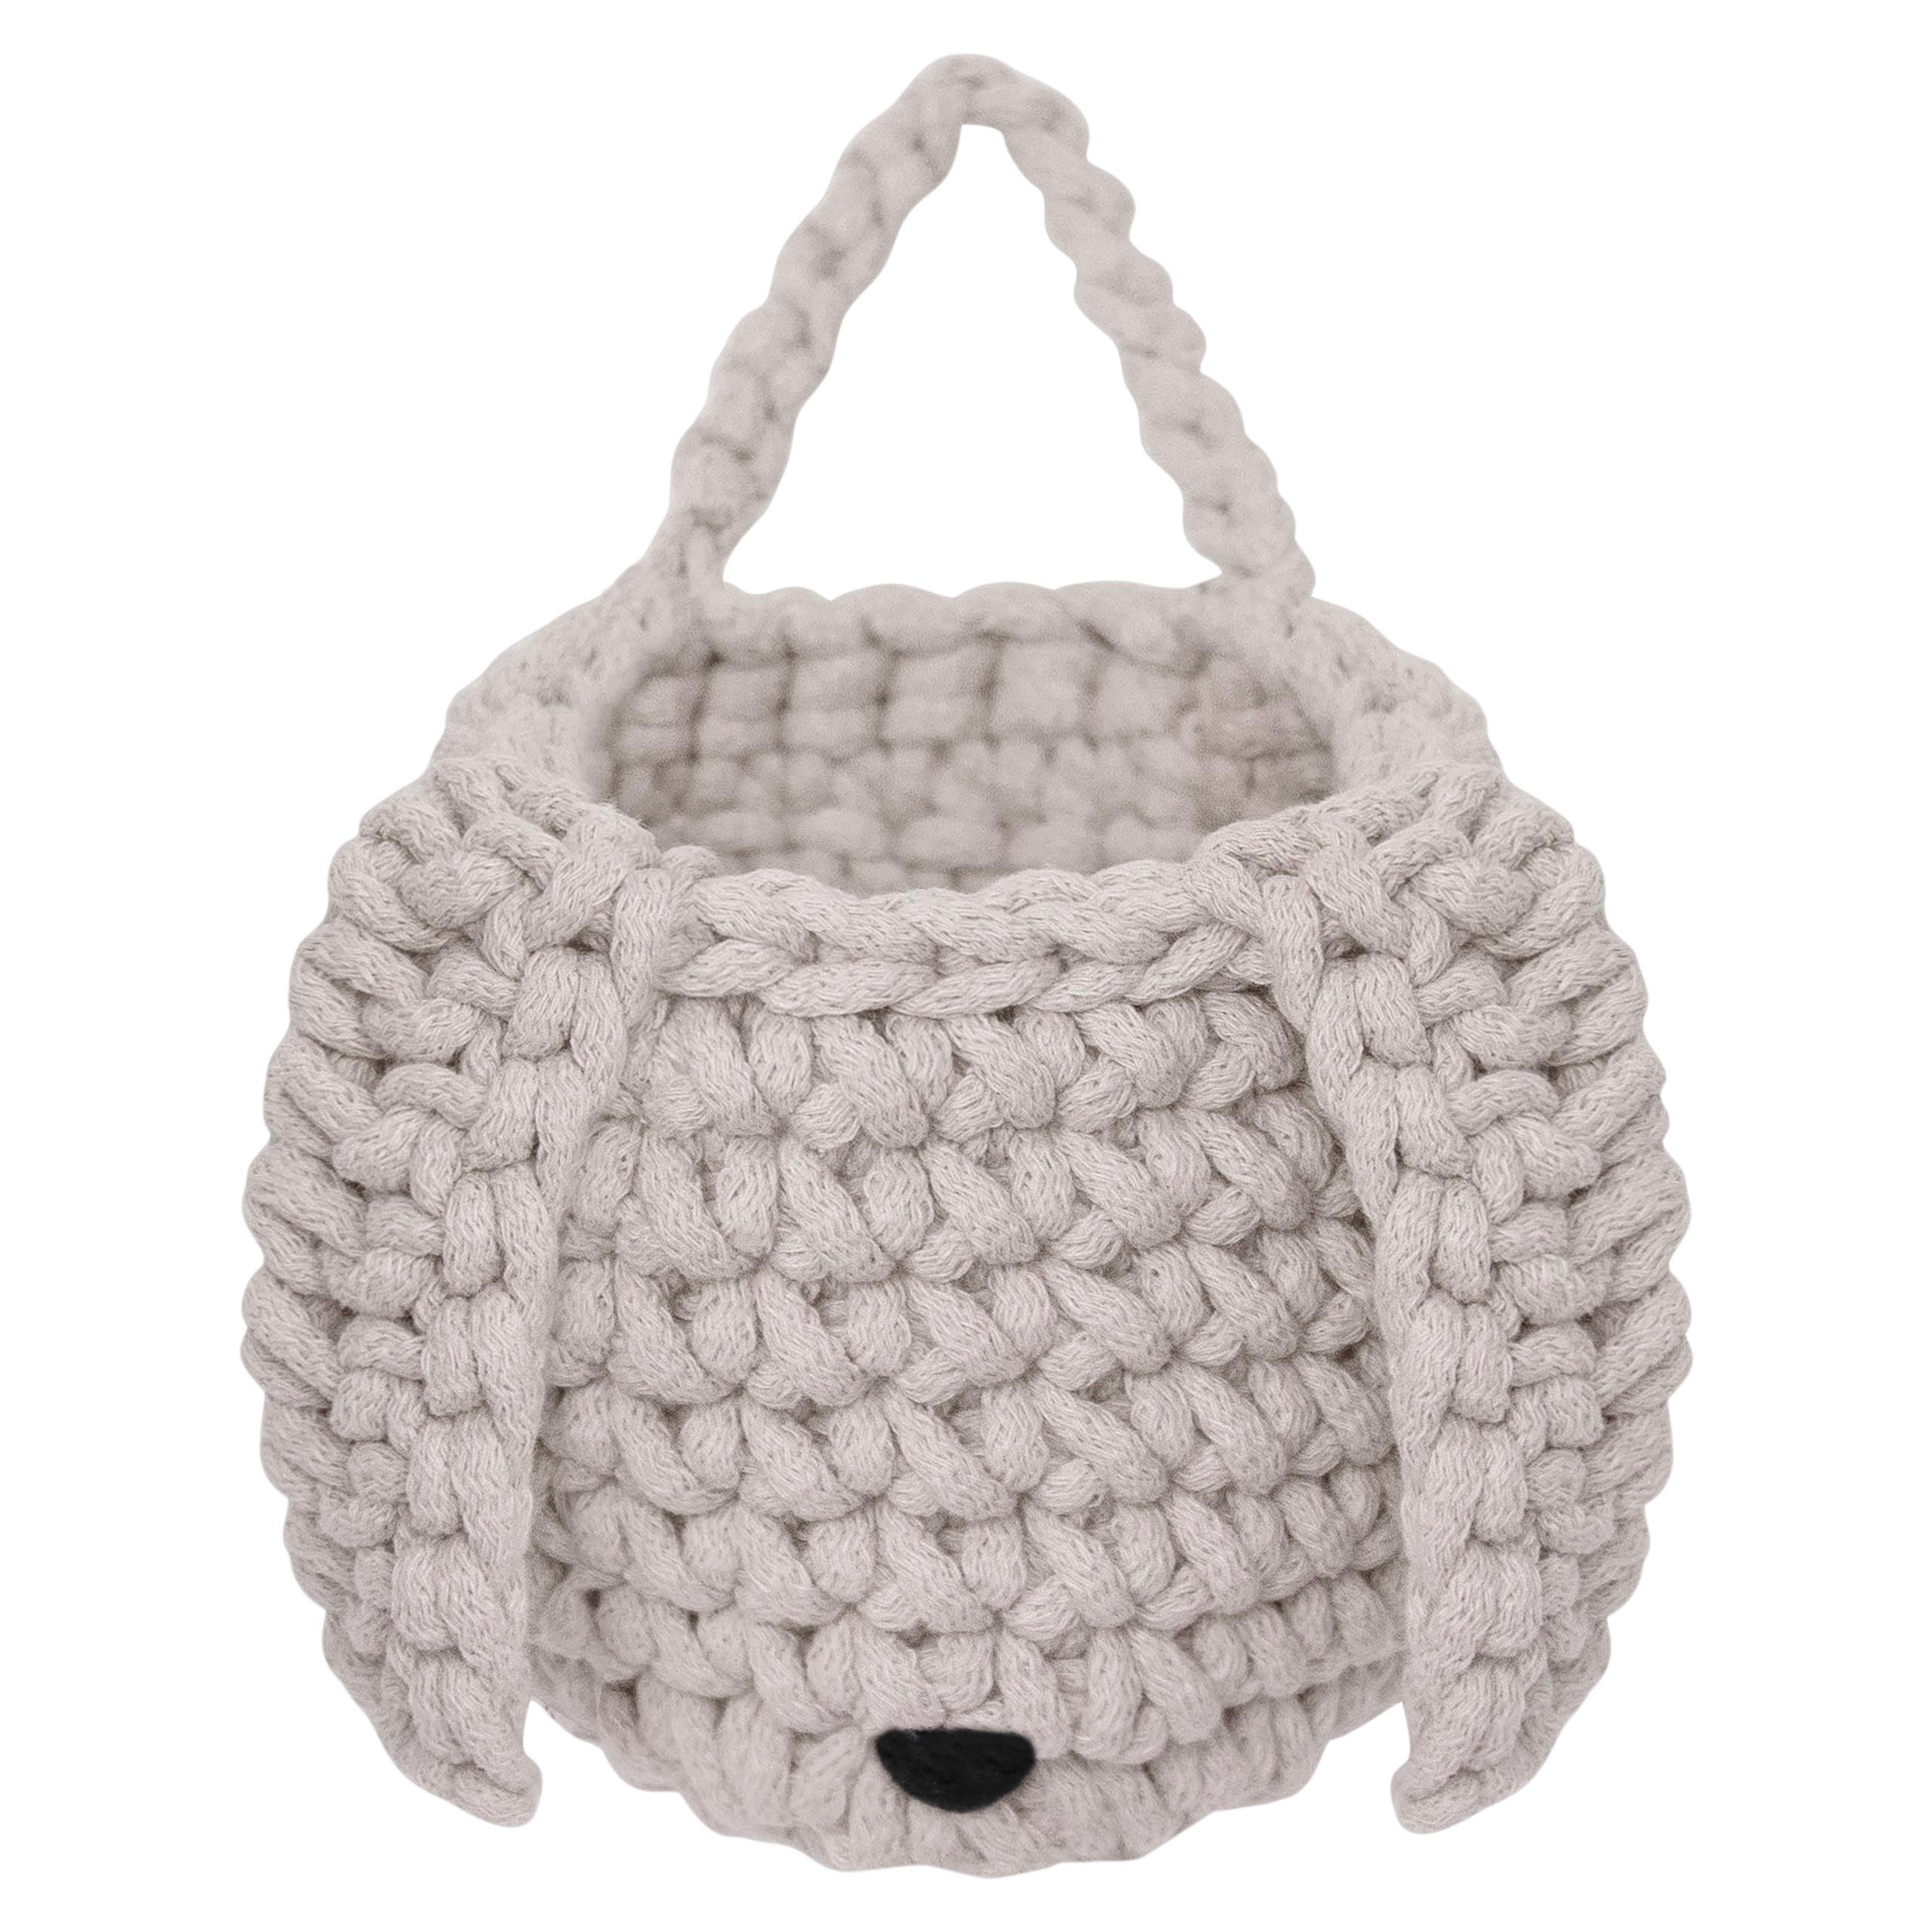 Zuri House Crochet Bunny Basket | OATMEAL - with handle